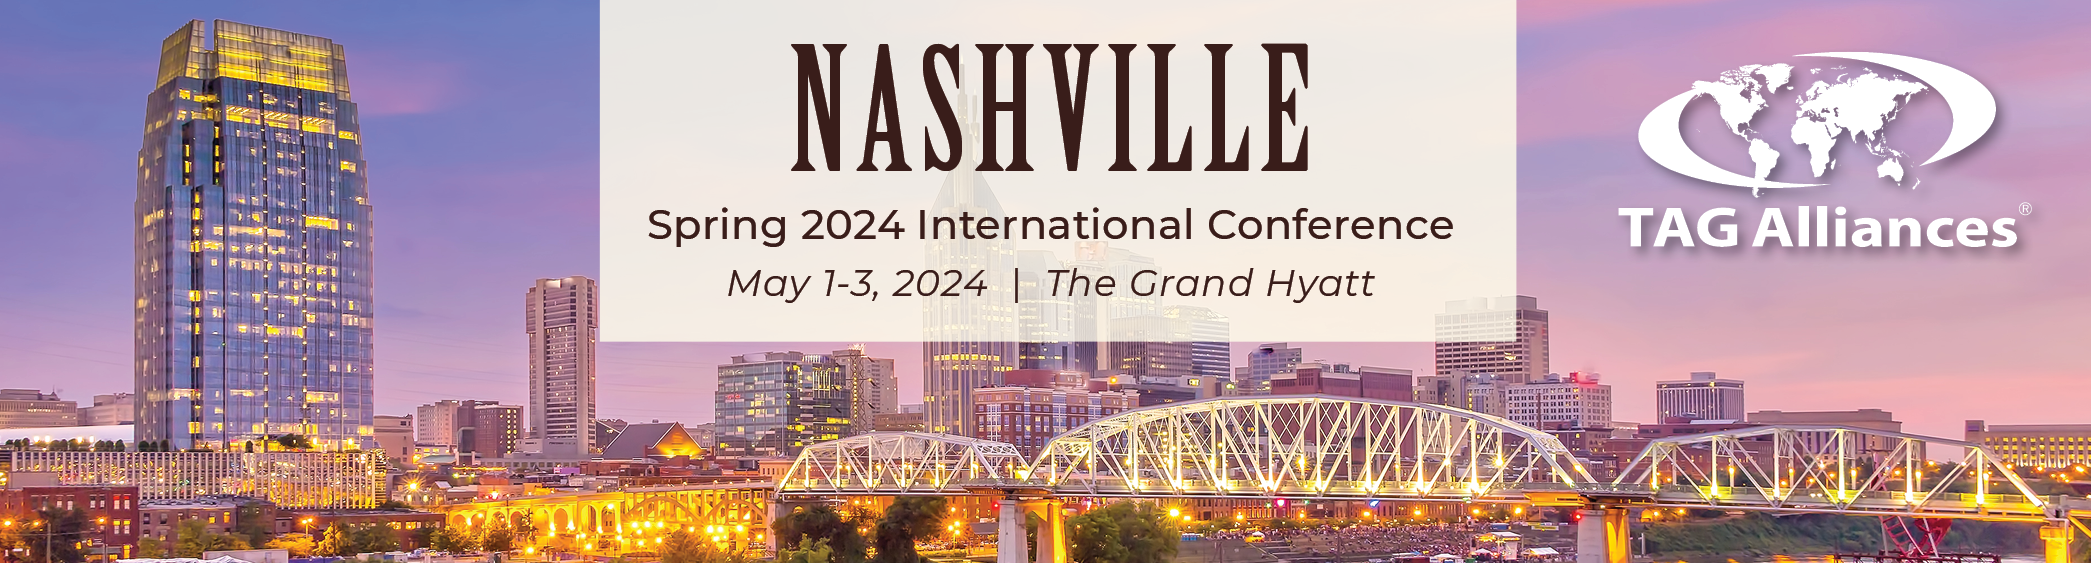 TAG Alliances Spring 2024 International Conference - Nashville